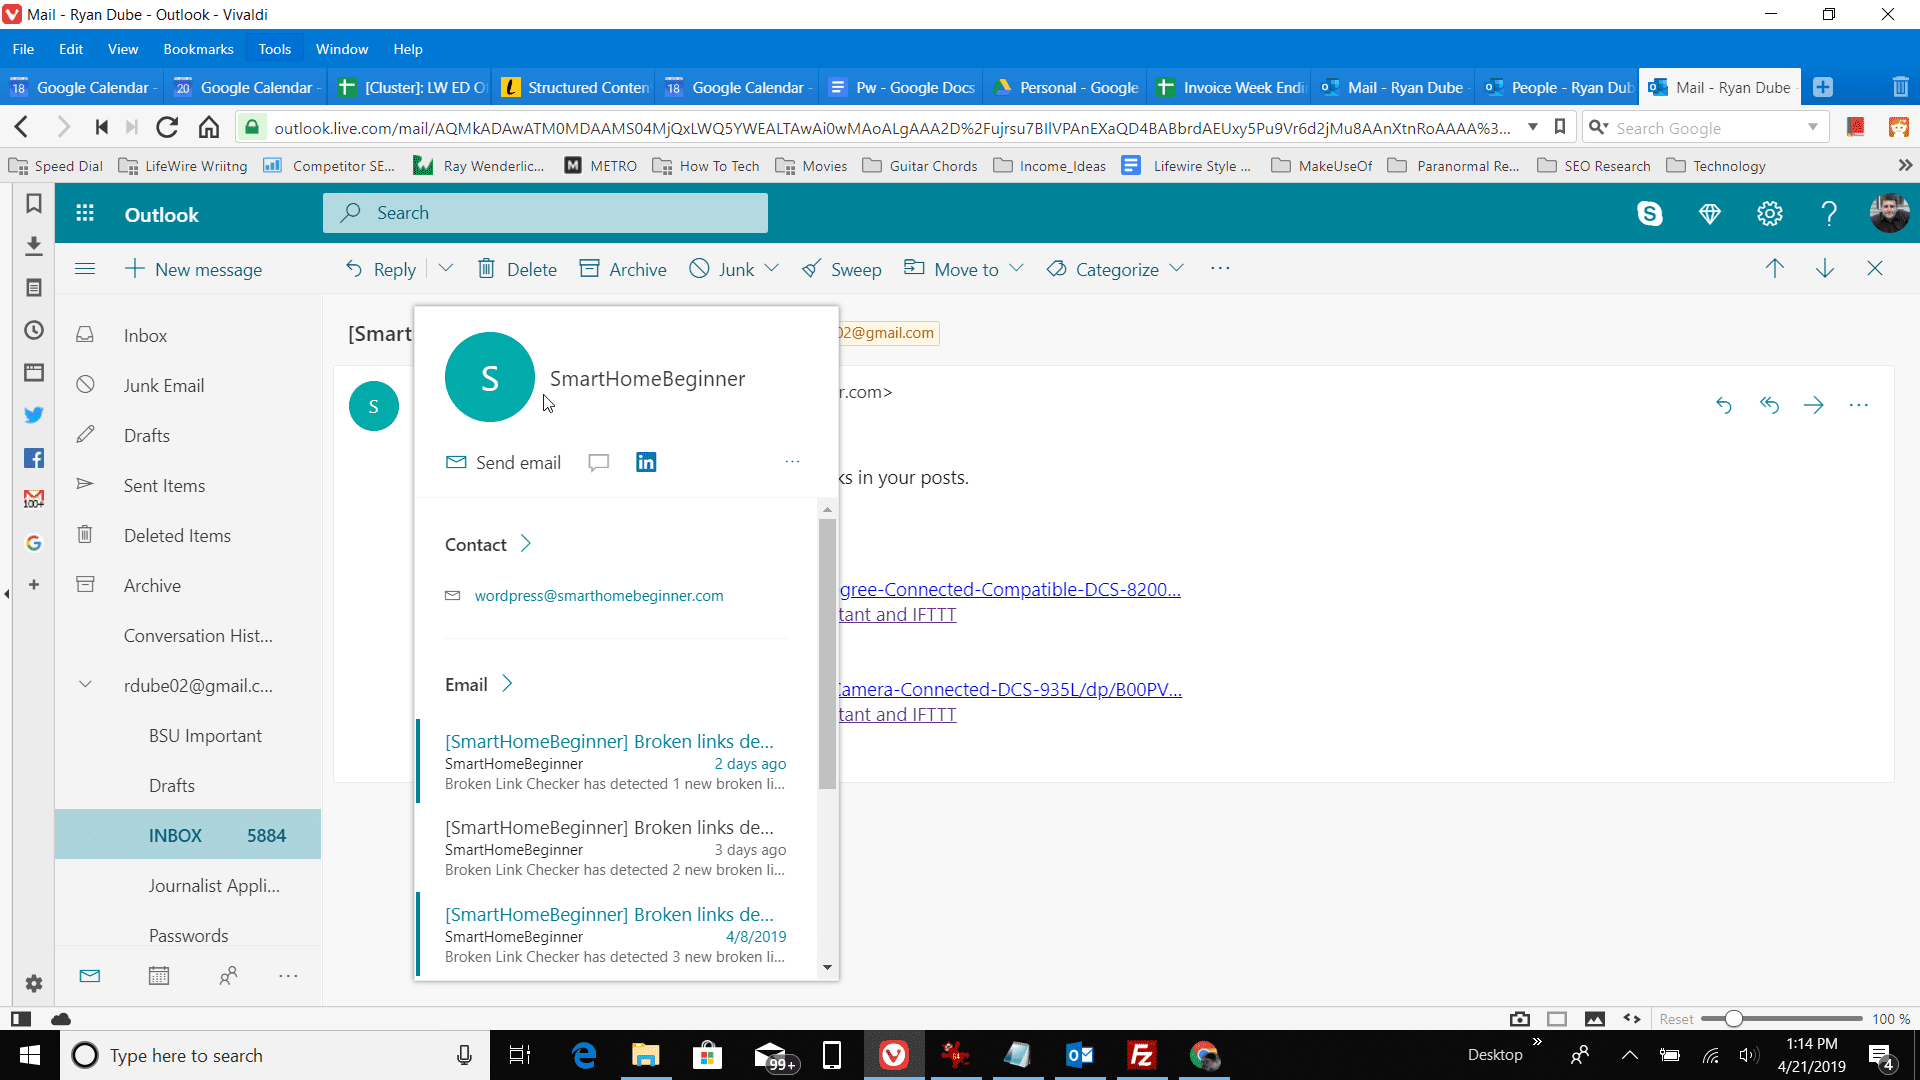 Captura de tela da seleção de contatos no Outlook.com